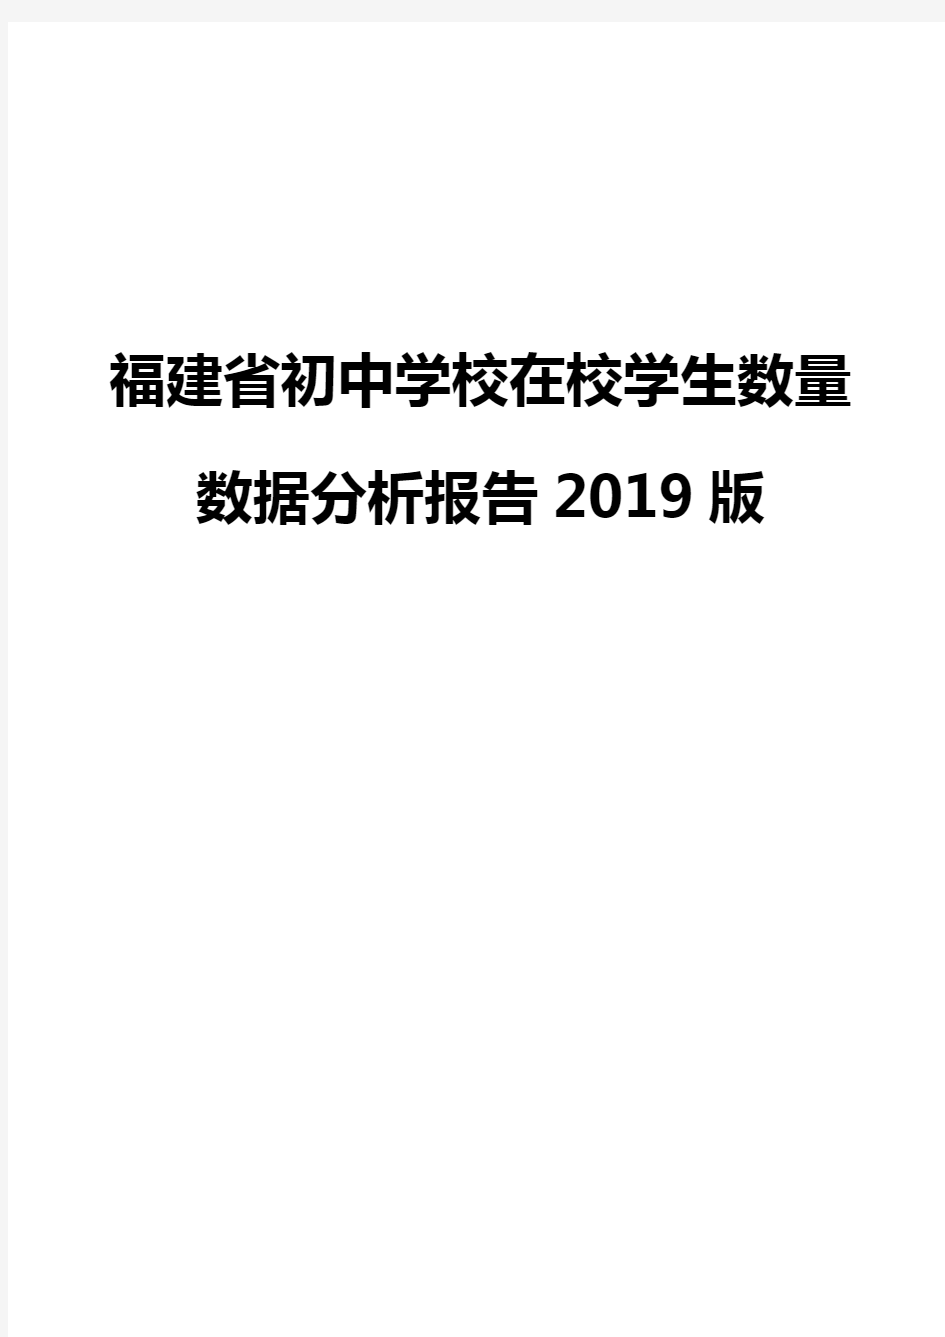 福建省初中学校在校学生数量数据分析报告2019版